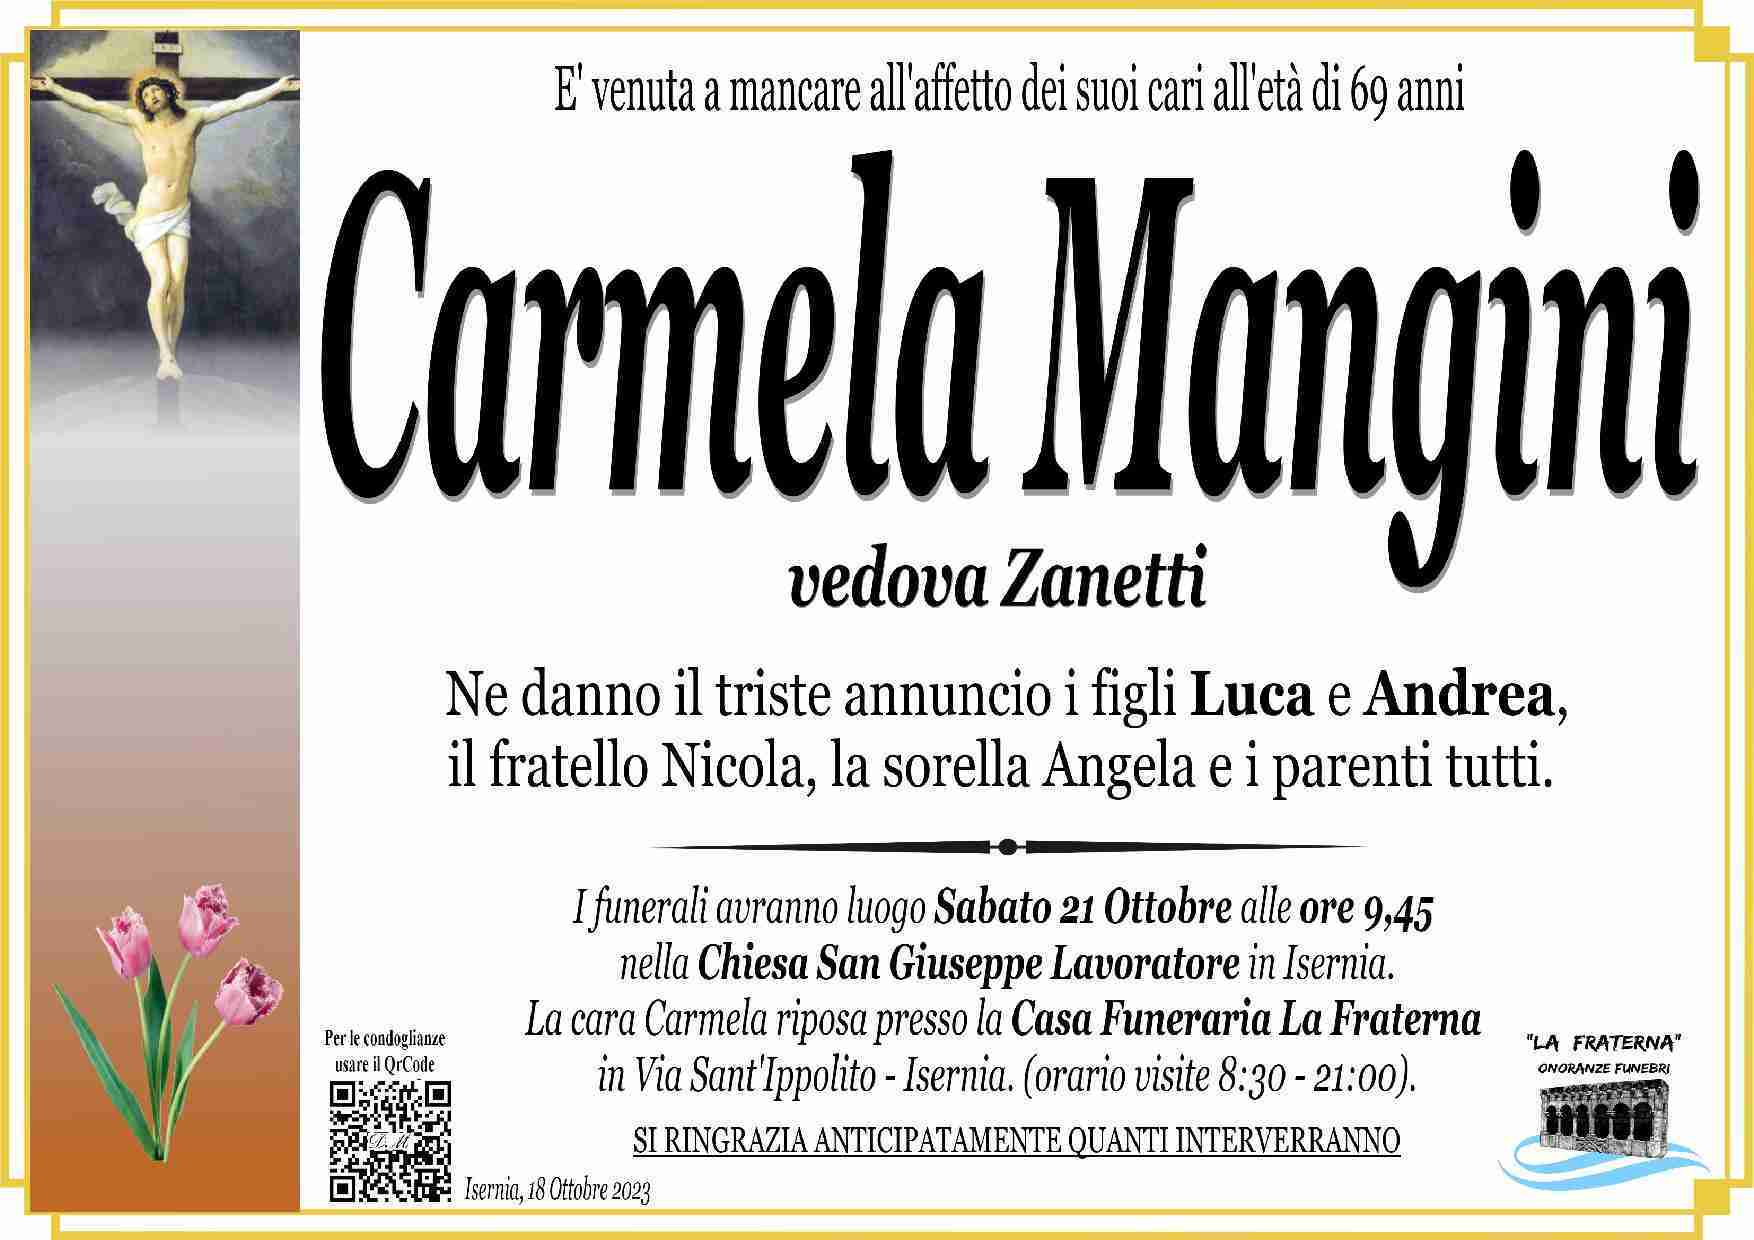 Carmela Mangini